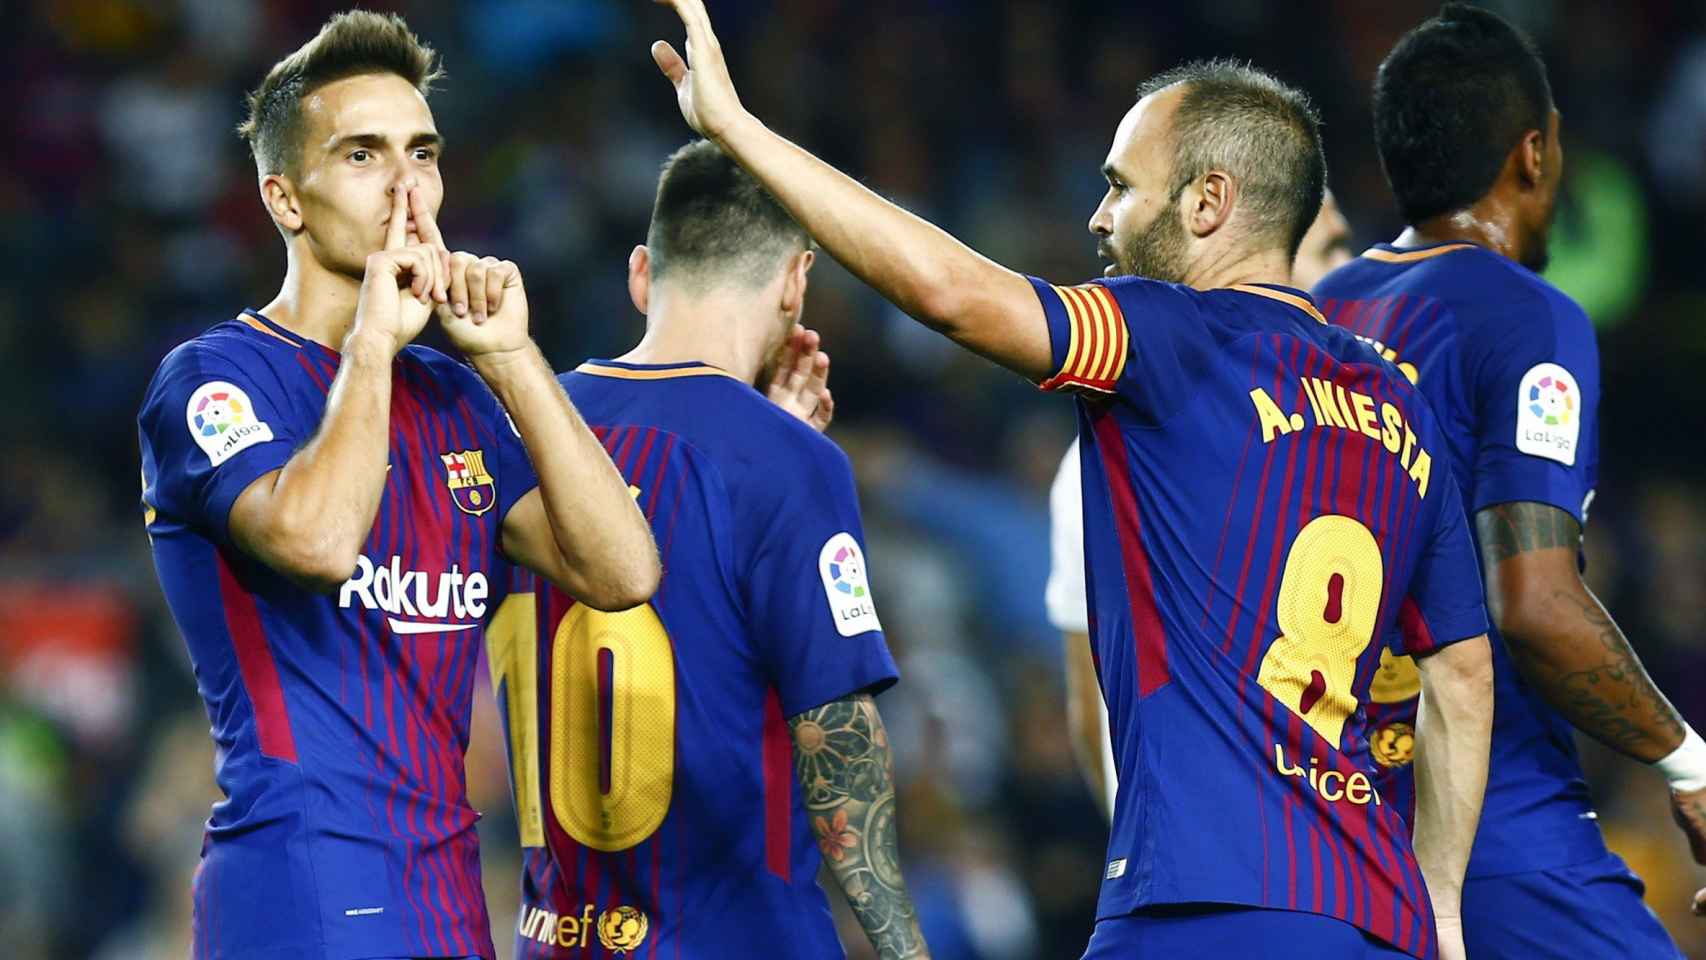 Los jugadores del Barça celebran un gol ante el Eibar / EFE